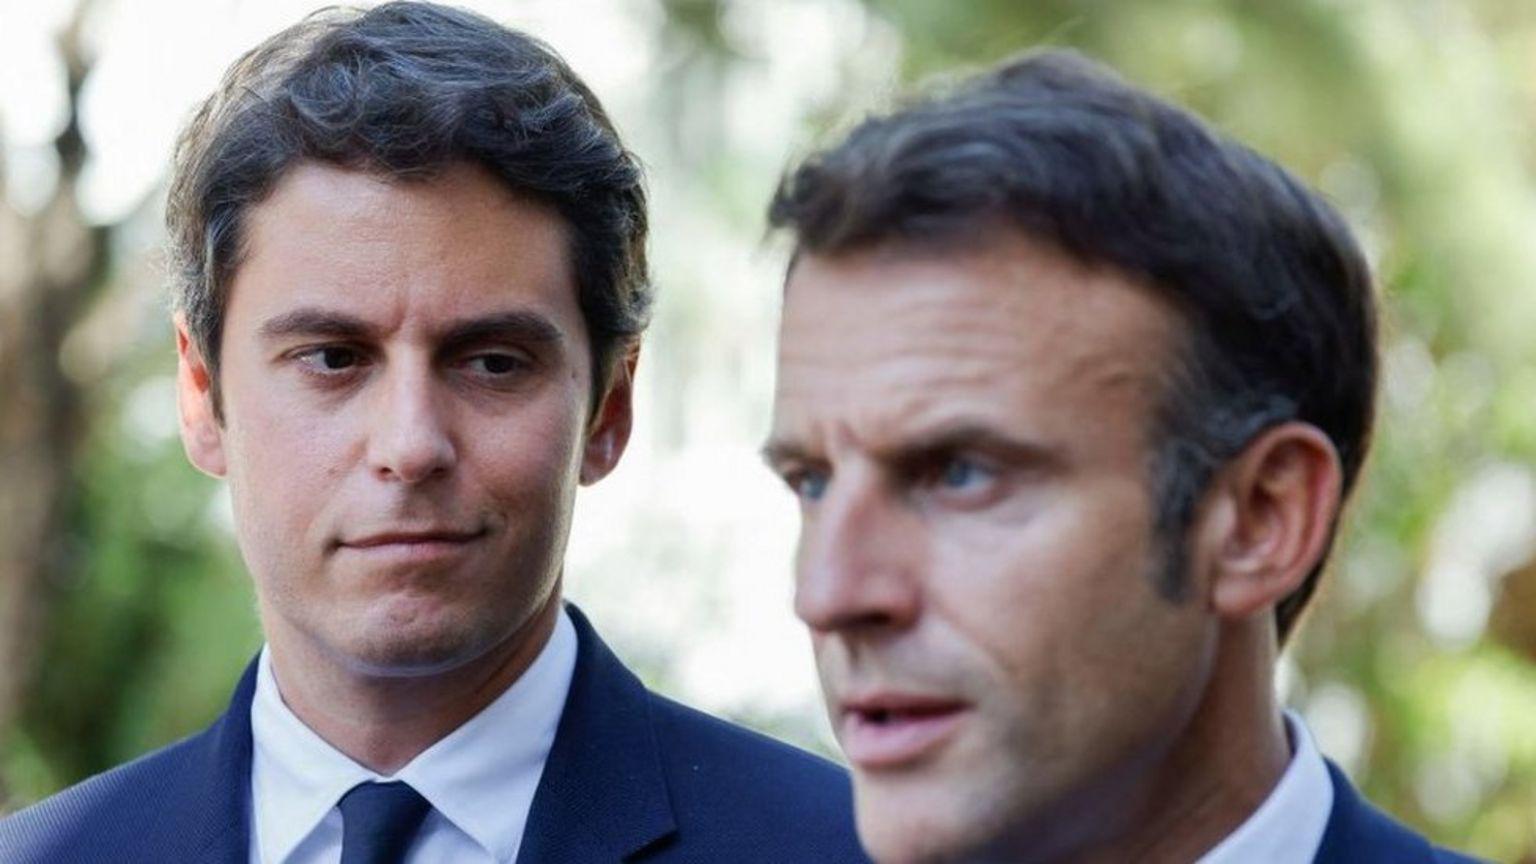 Quién Es Gabriel Attal El Primer Ministro Más Joven De La Historia De Francia Nombrado Por Macron